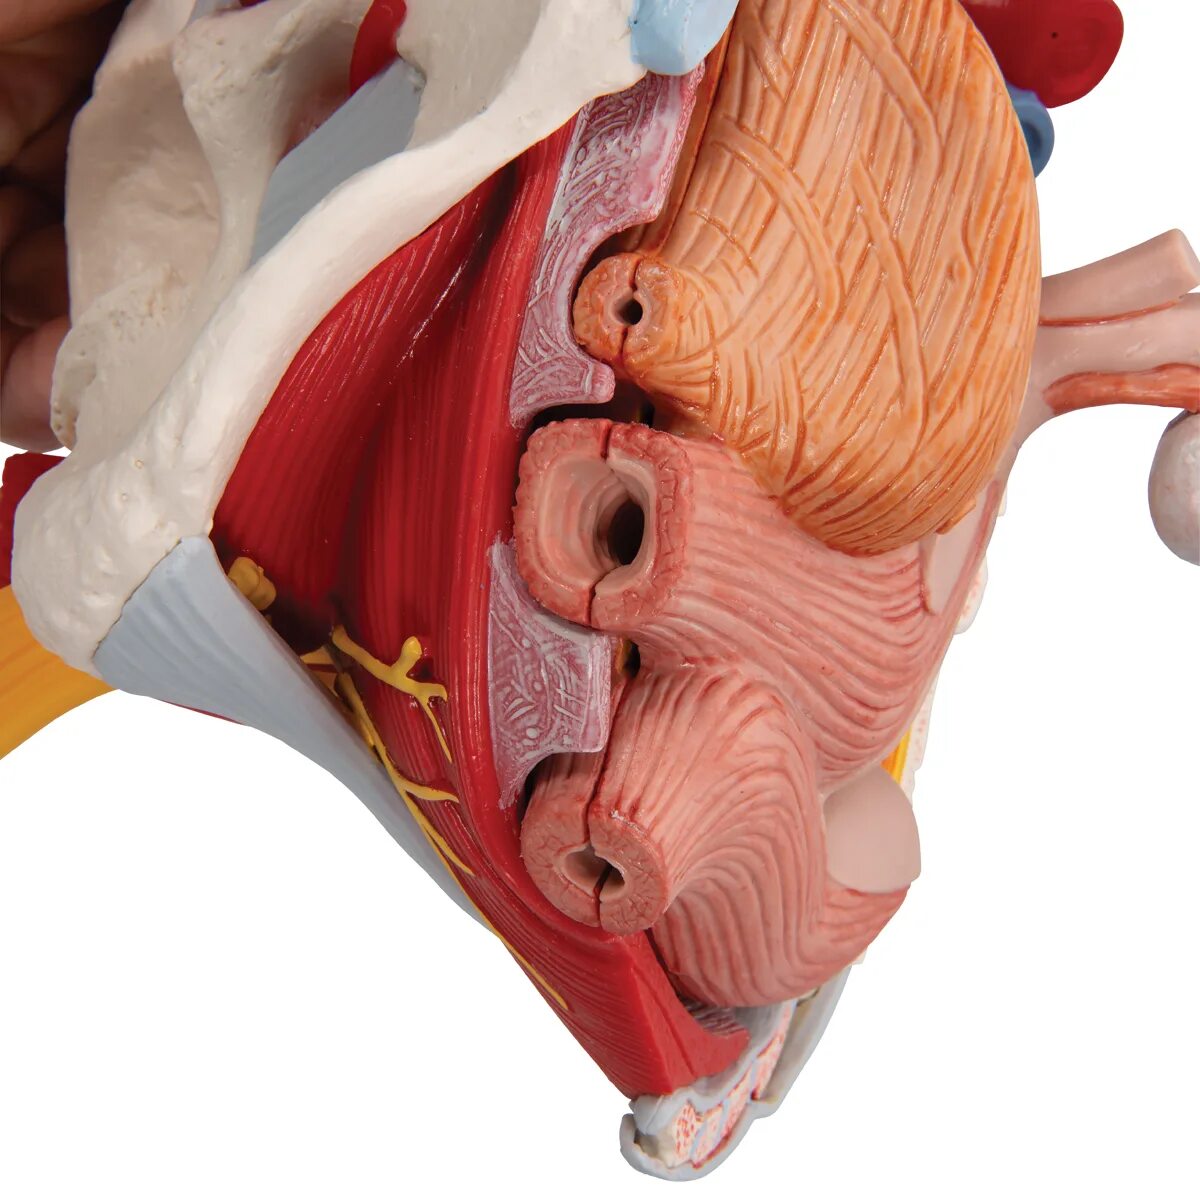 Тазовое дно анатомия. Мышцы тазового дна анатомия. Связки мышц тазового дна. Анатомическая модель тазового дна женщины. Женский орган между